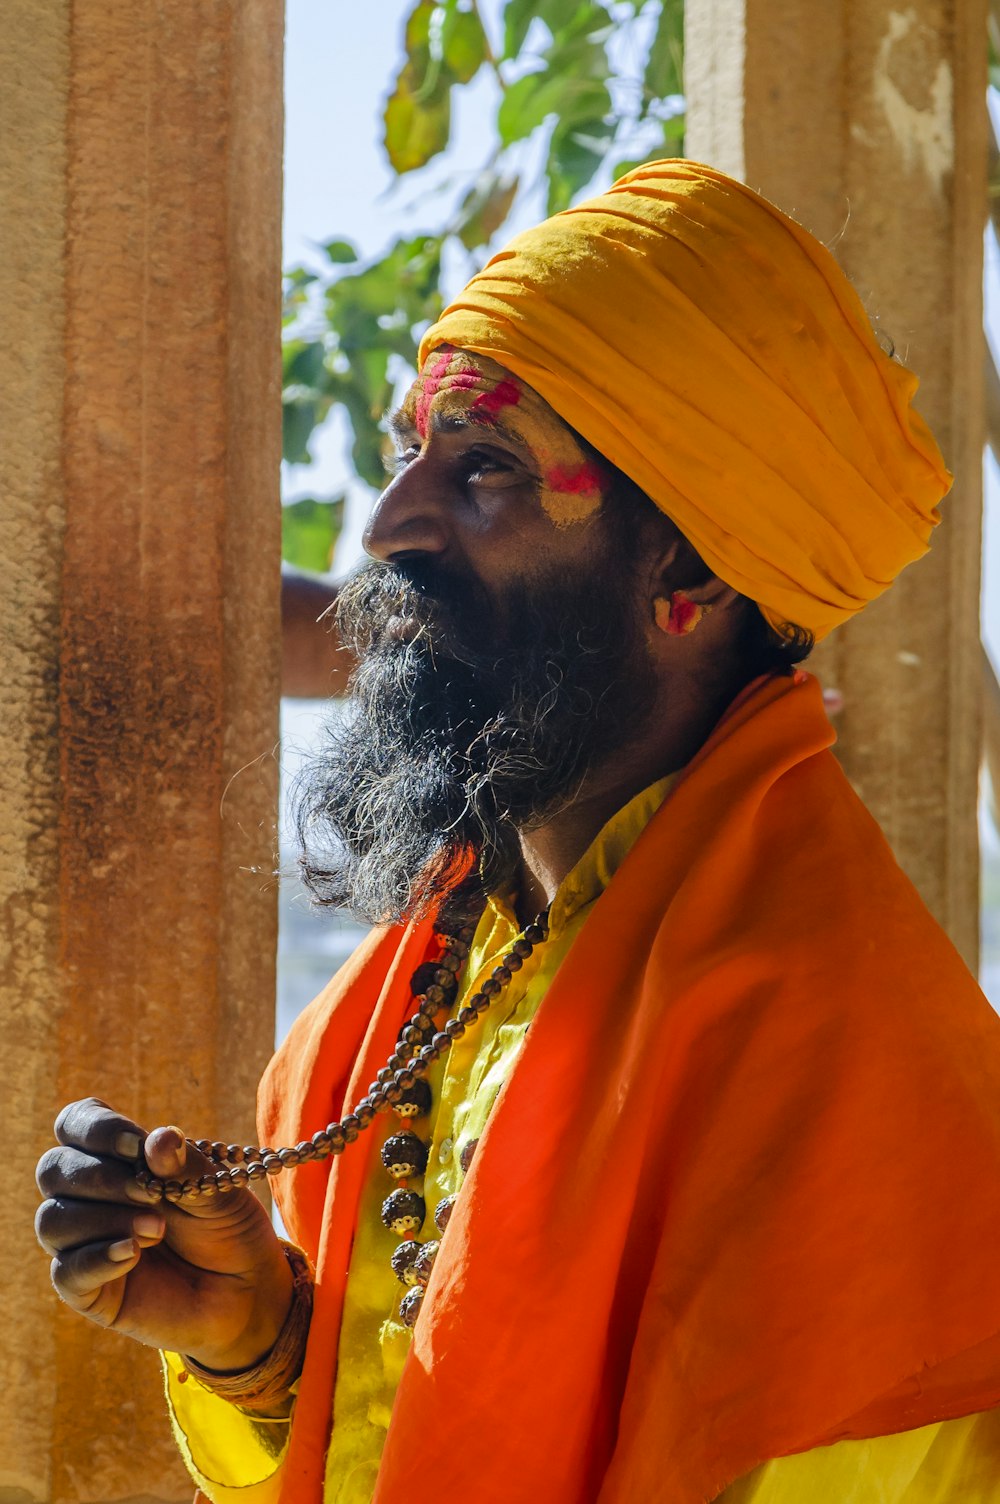 a man with a beard wearing an orange turban